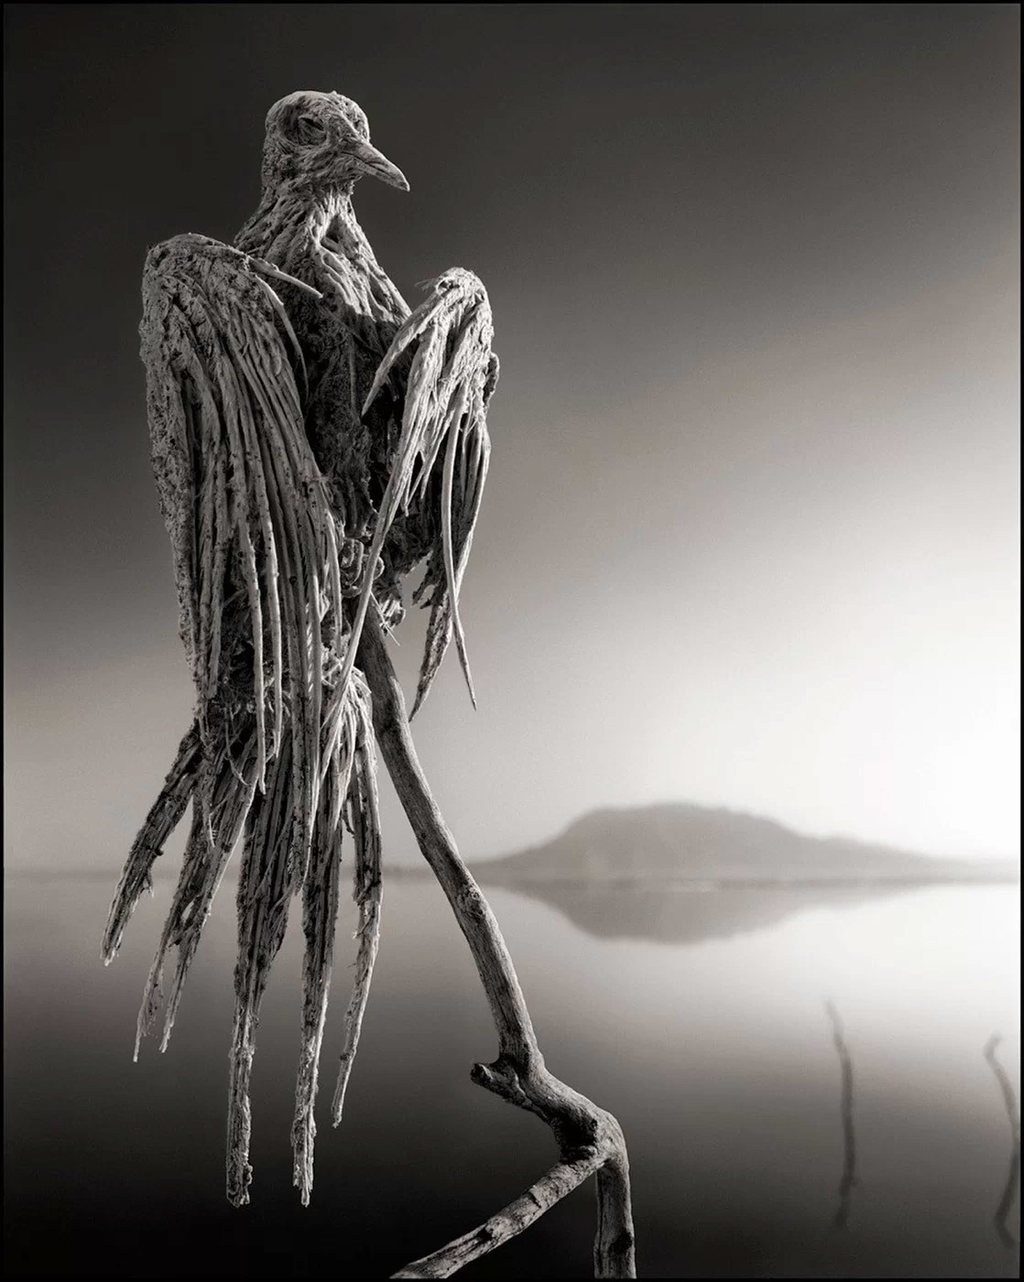 طائر نحام (فلامينغو) نافق في بحيرة (ناترون)